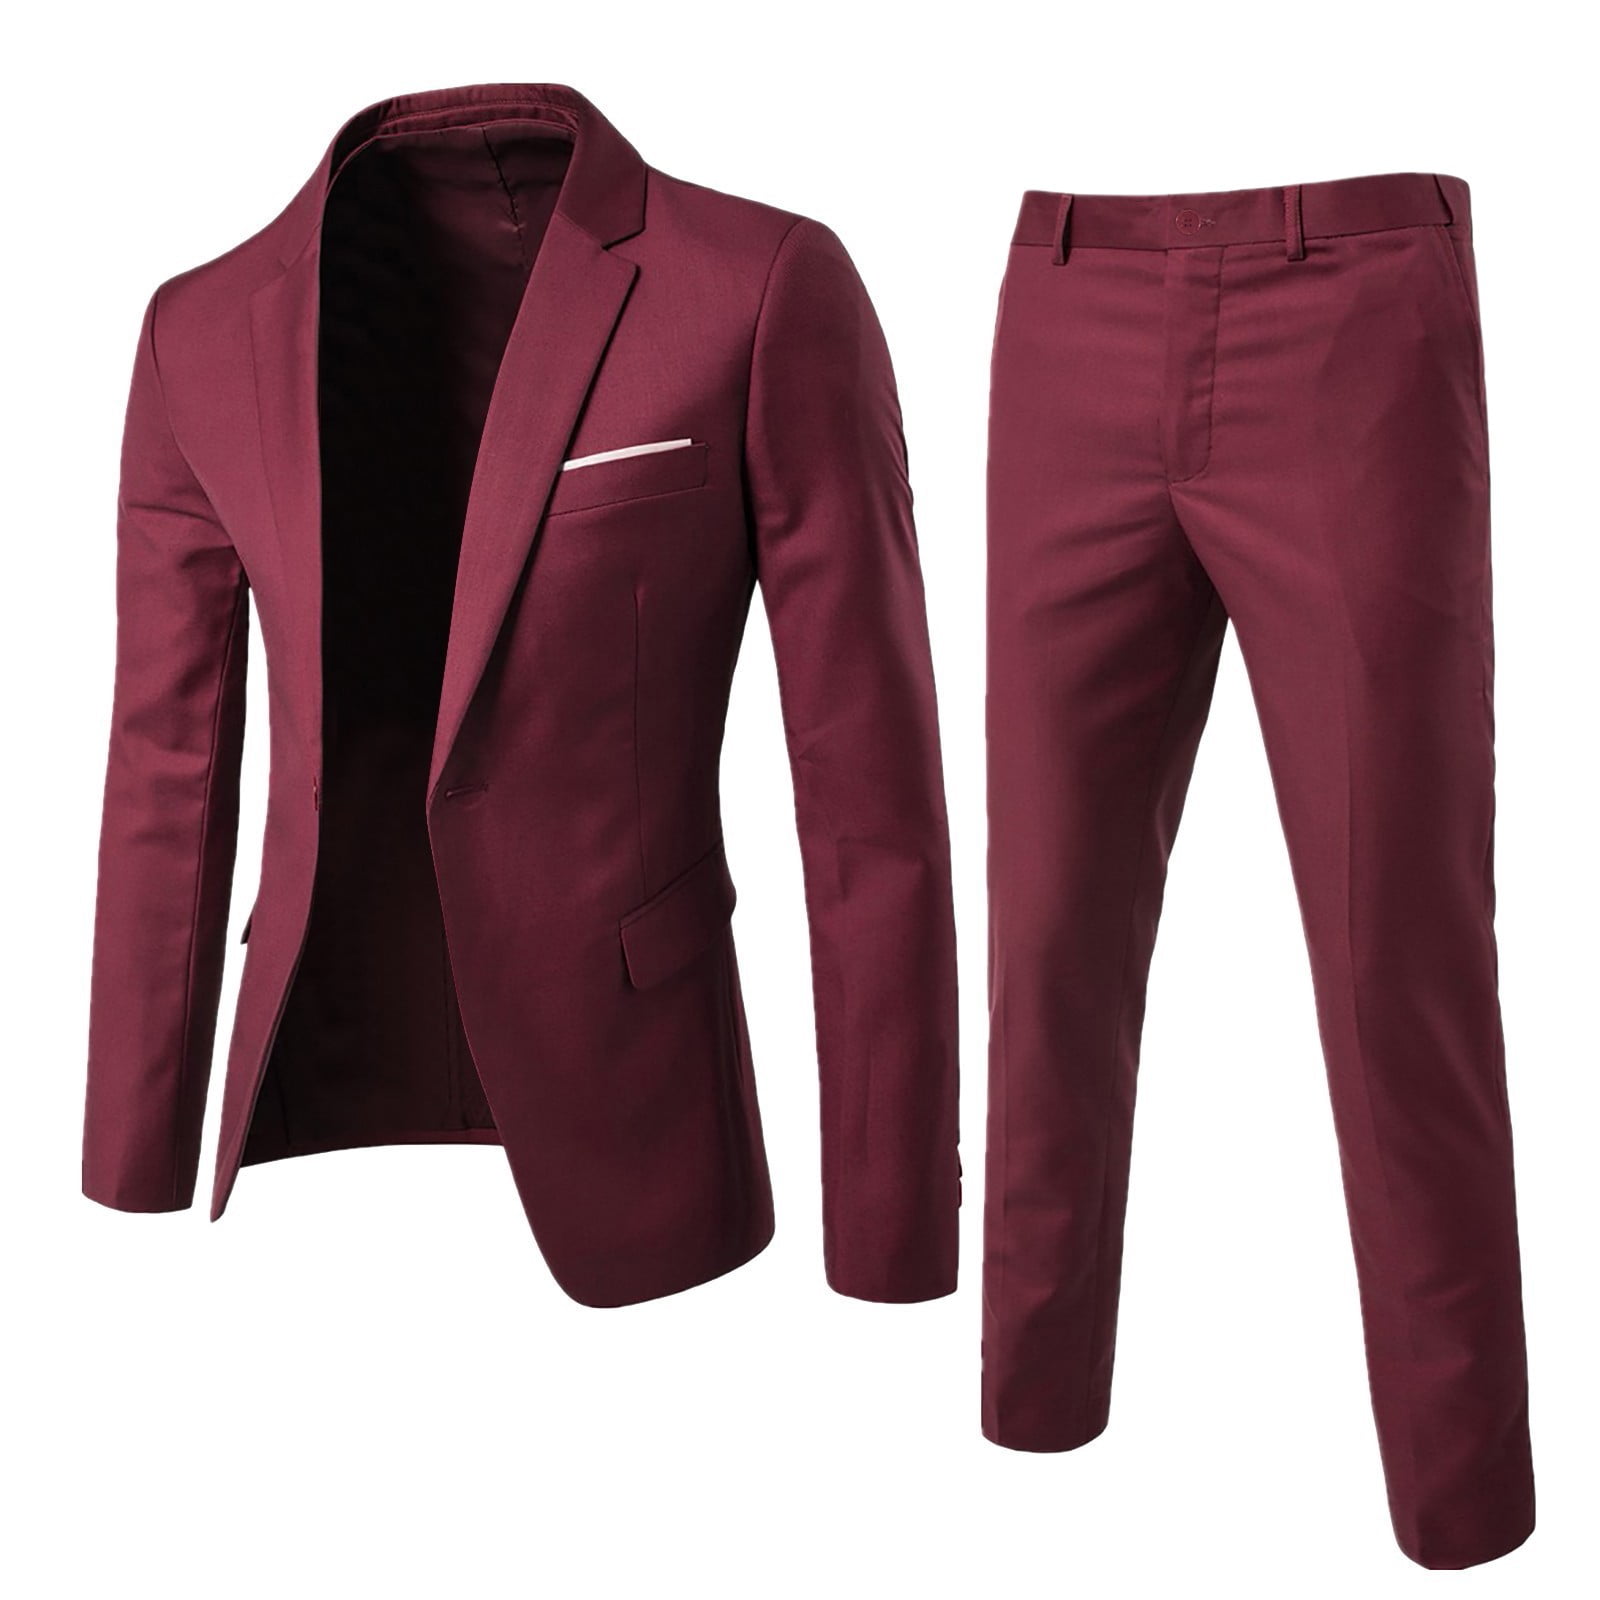 Men’s Suit Slim 2 Piece Suit Business Wedding Party Jacket Vest & Pants ...